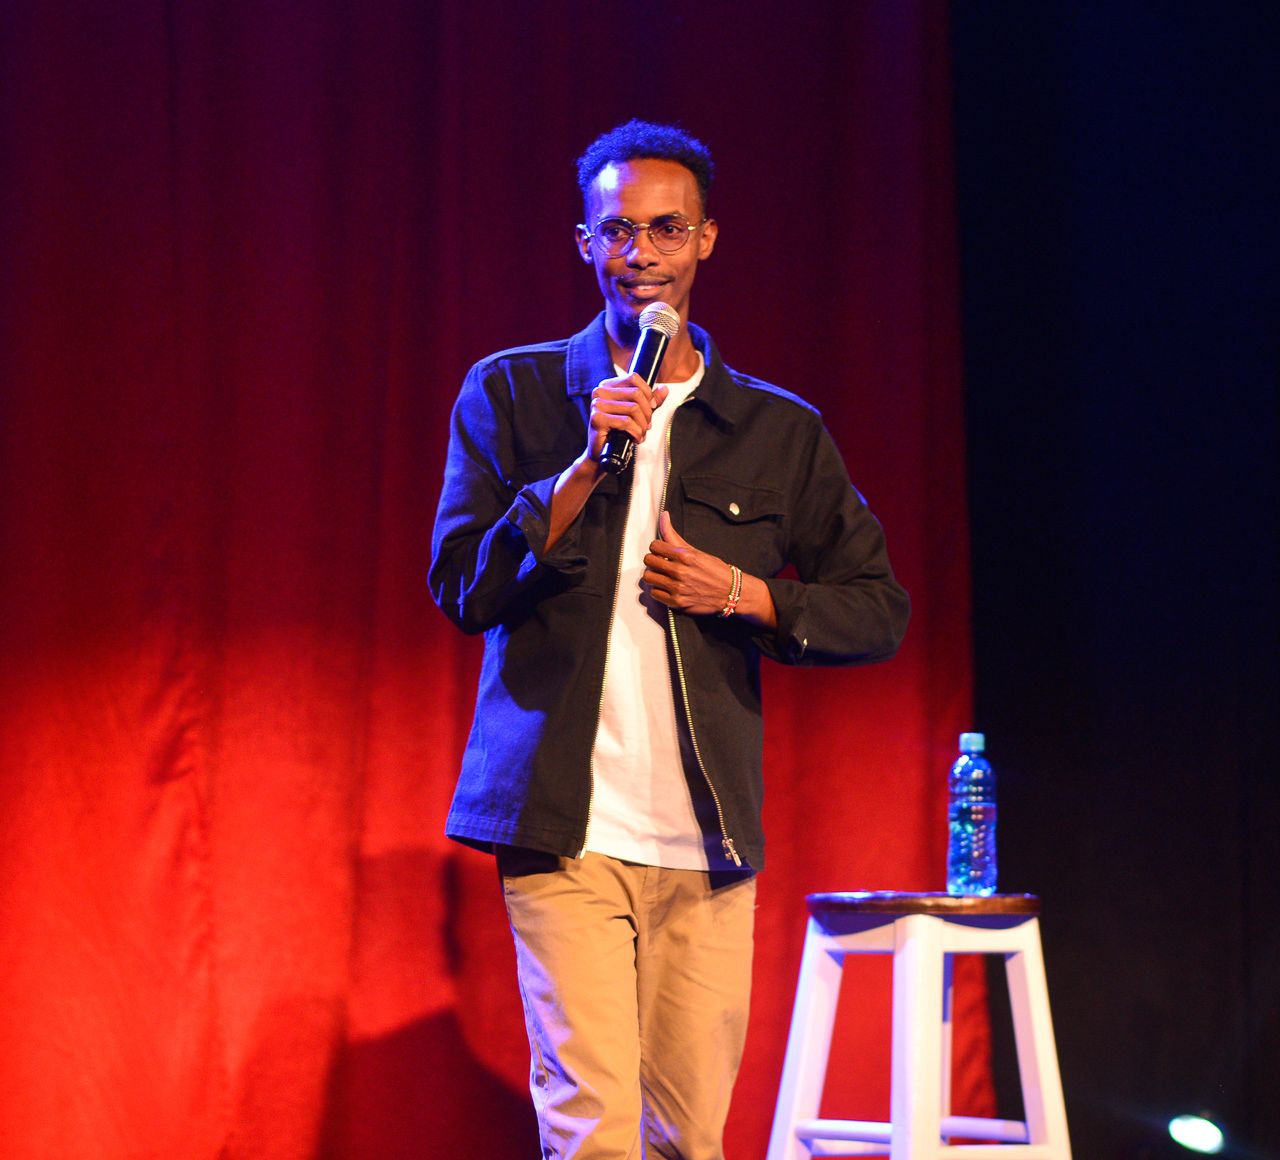 Adan Abdi, rising star and trailblazer in comedy